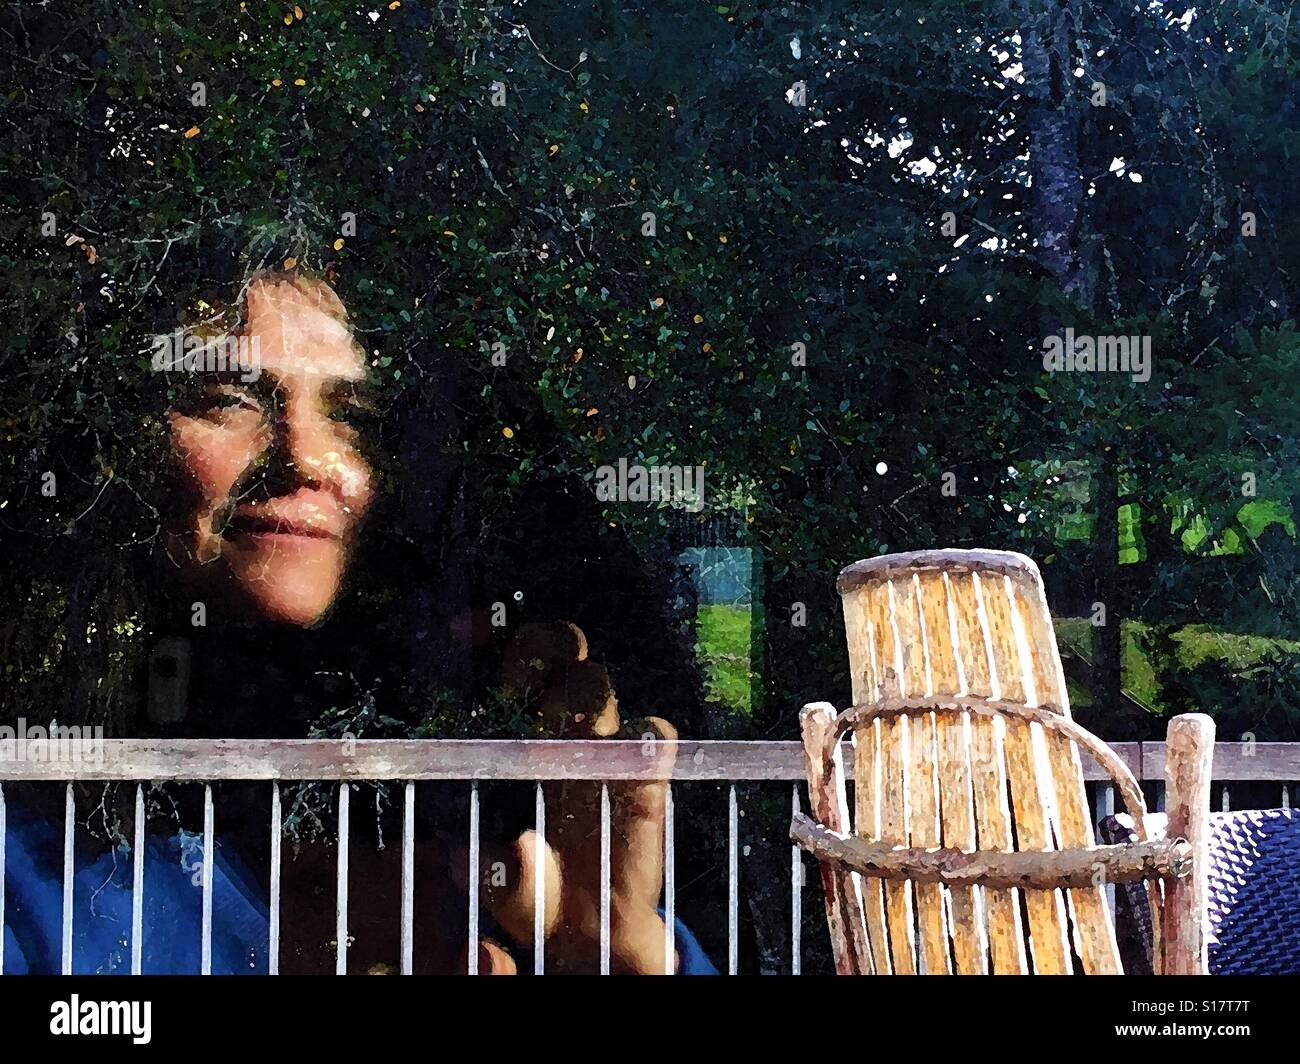 Reflexion der Frau das Gesicht in den Bäumen neben einem Andirondack Schaukelstuhl Stockfoto